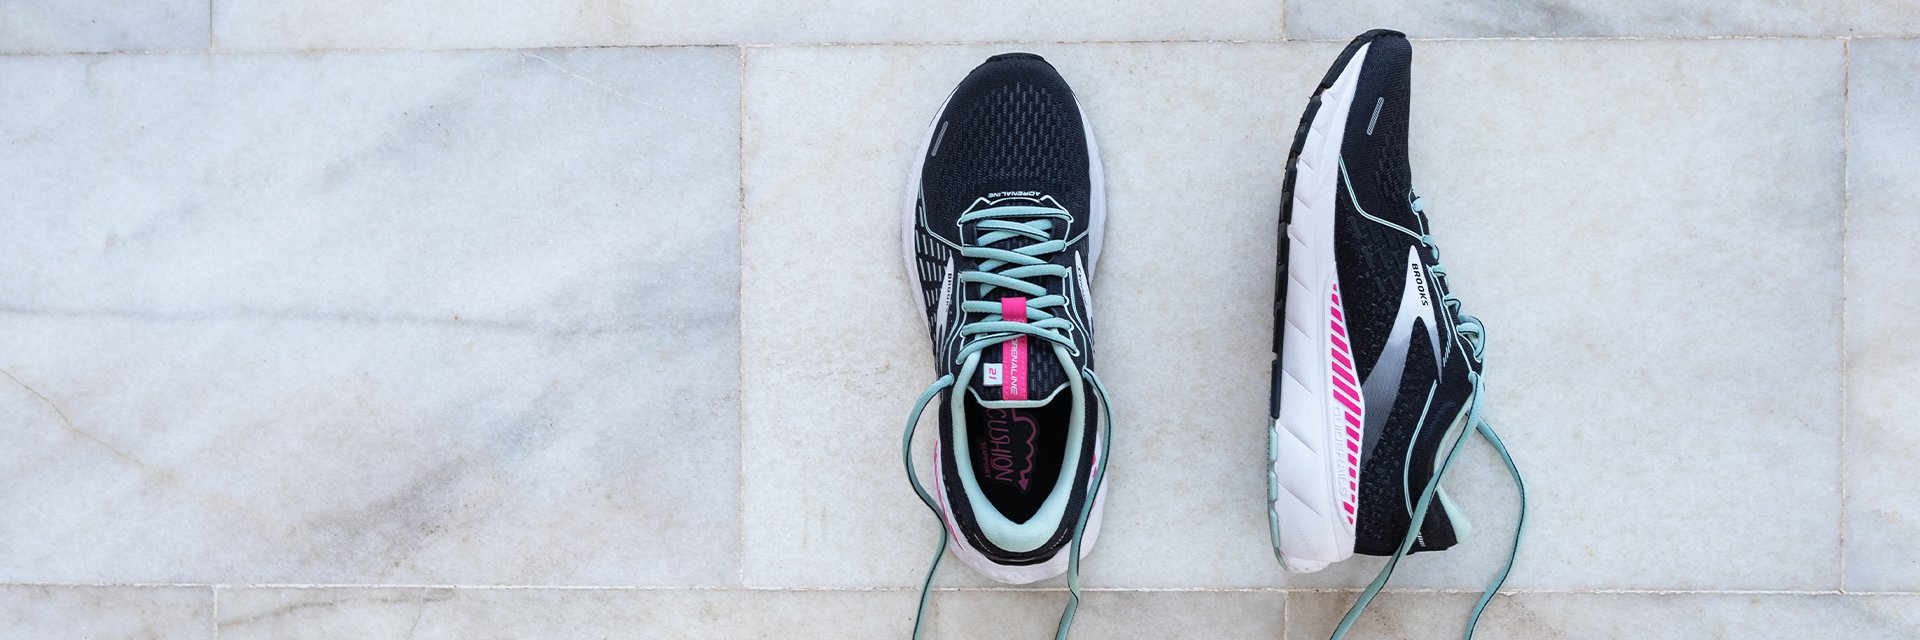 Jakie buty wybrać do biegania po bieżni? | S'portofino